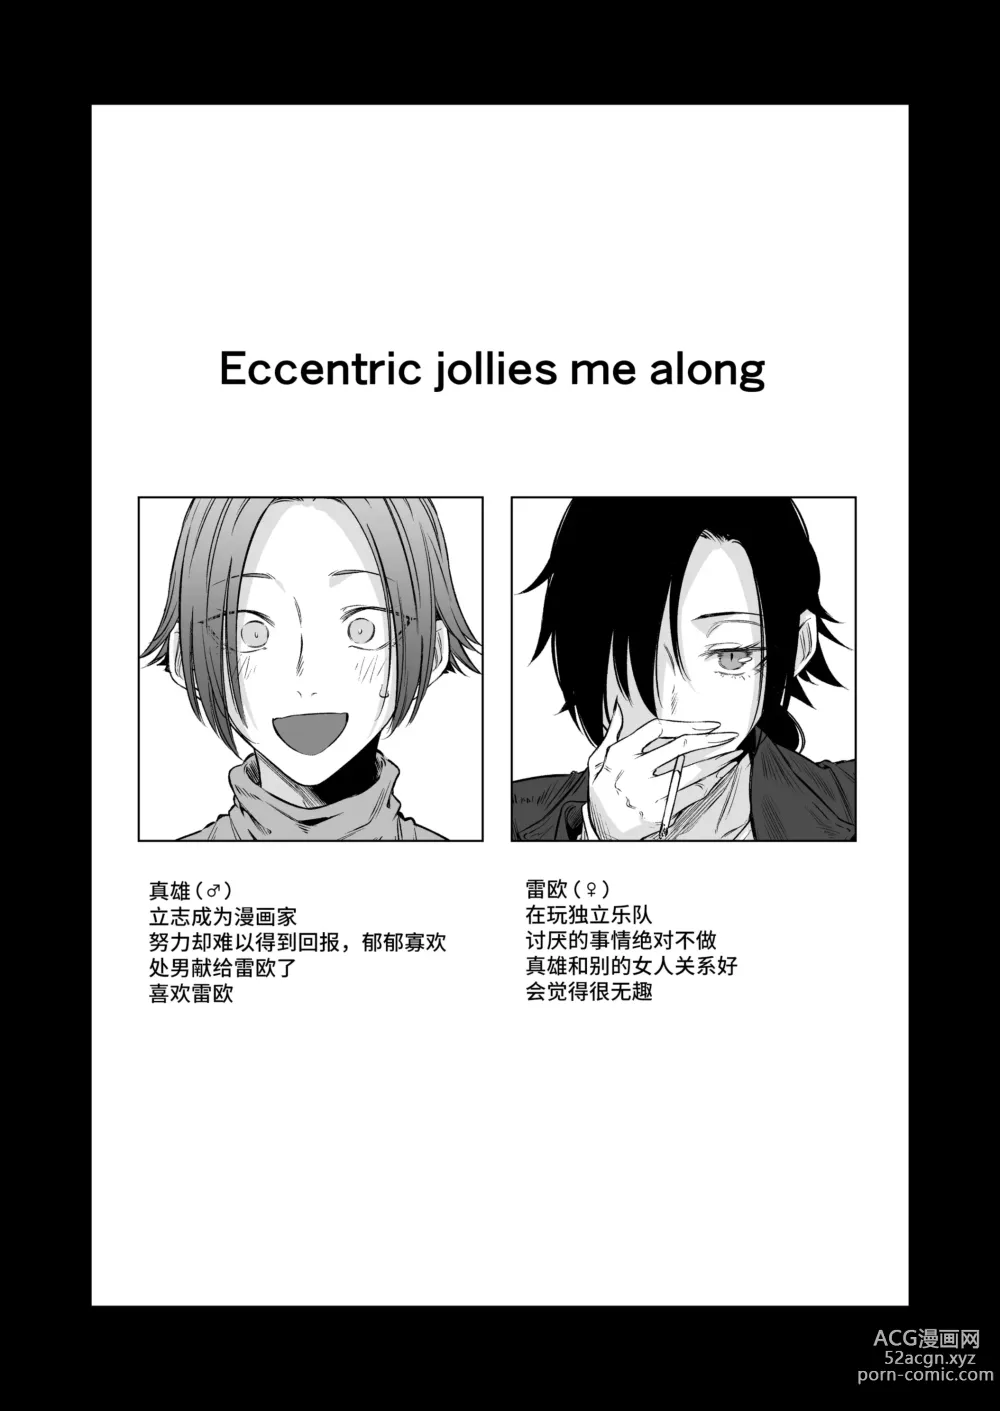 Page 3 of doujinshi Eccentric jollies me along